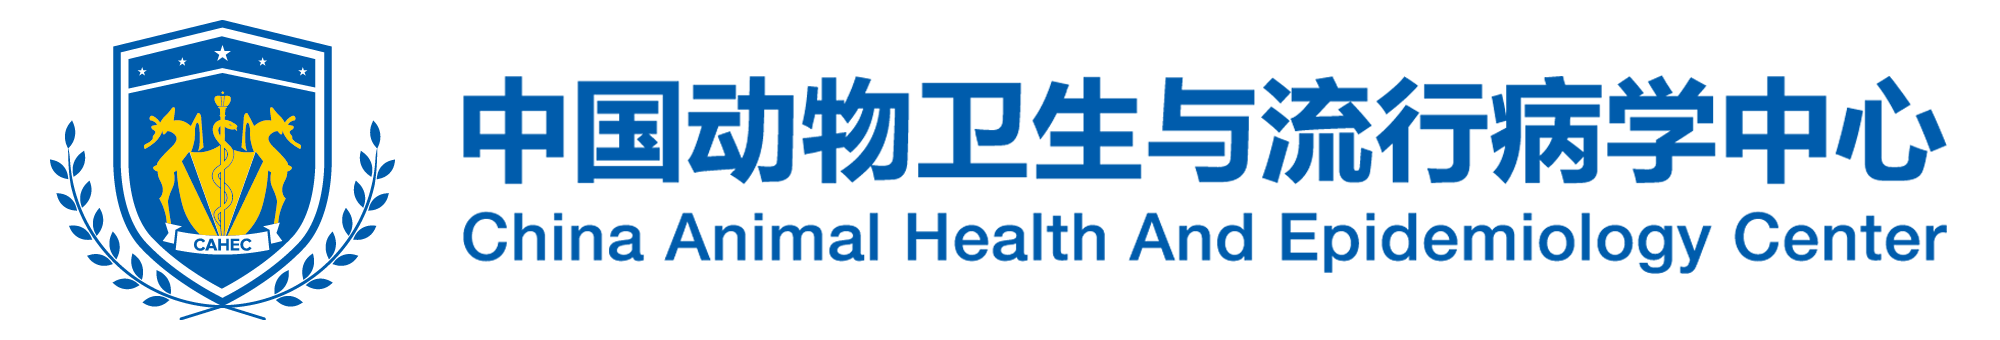 中國動物衛生與流行病學中心